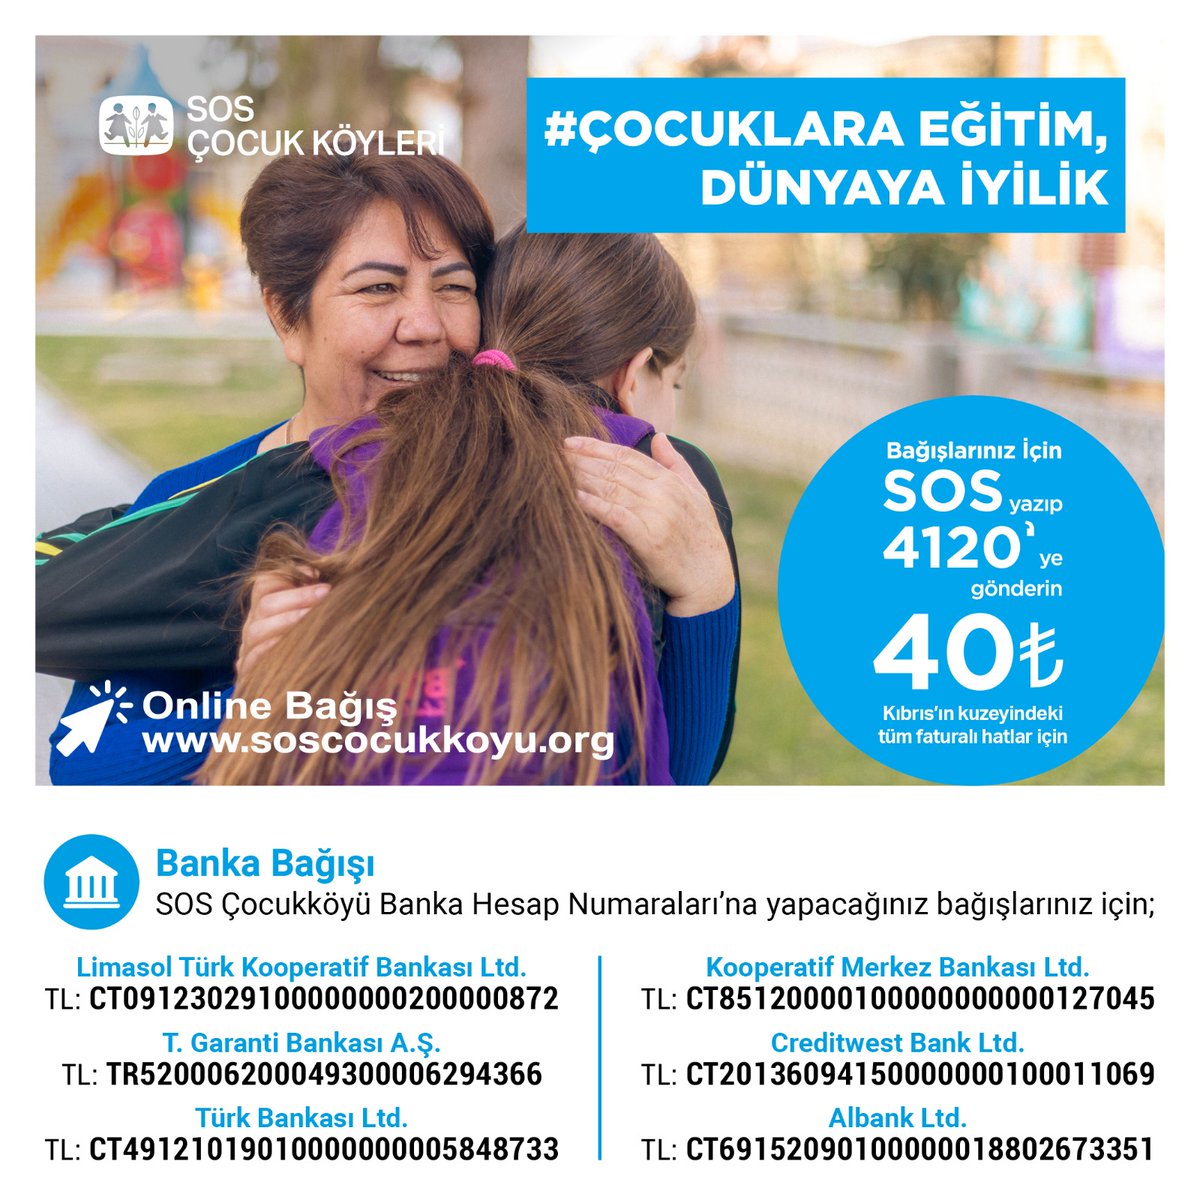 SOS Çocukköyü, KKTC (@CocukSOS) / Twitter